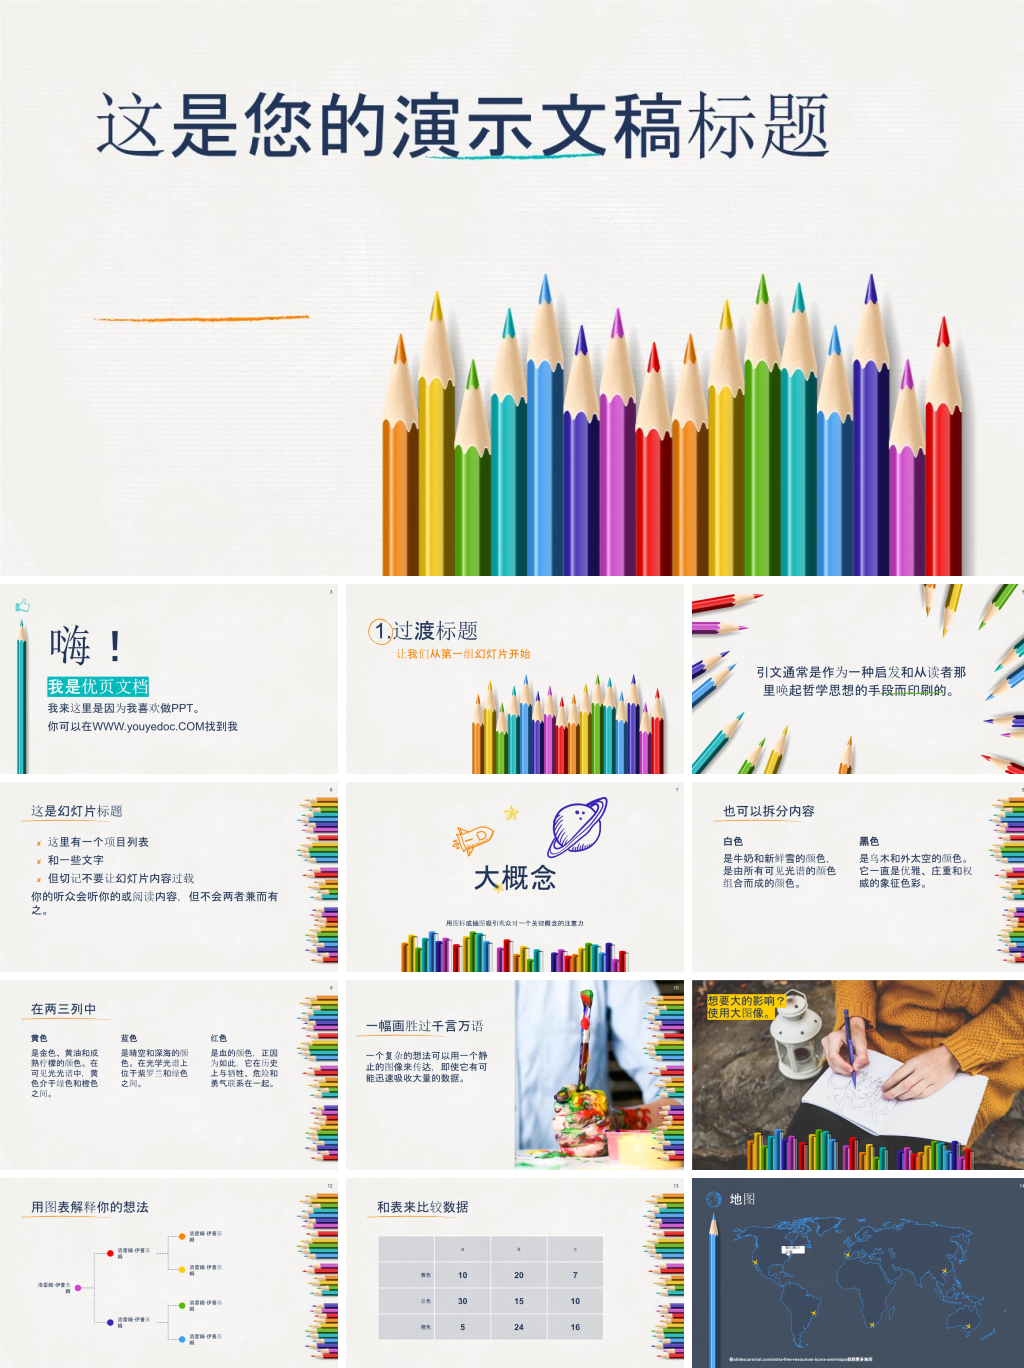 彩色铅笔教育类PPT